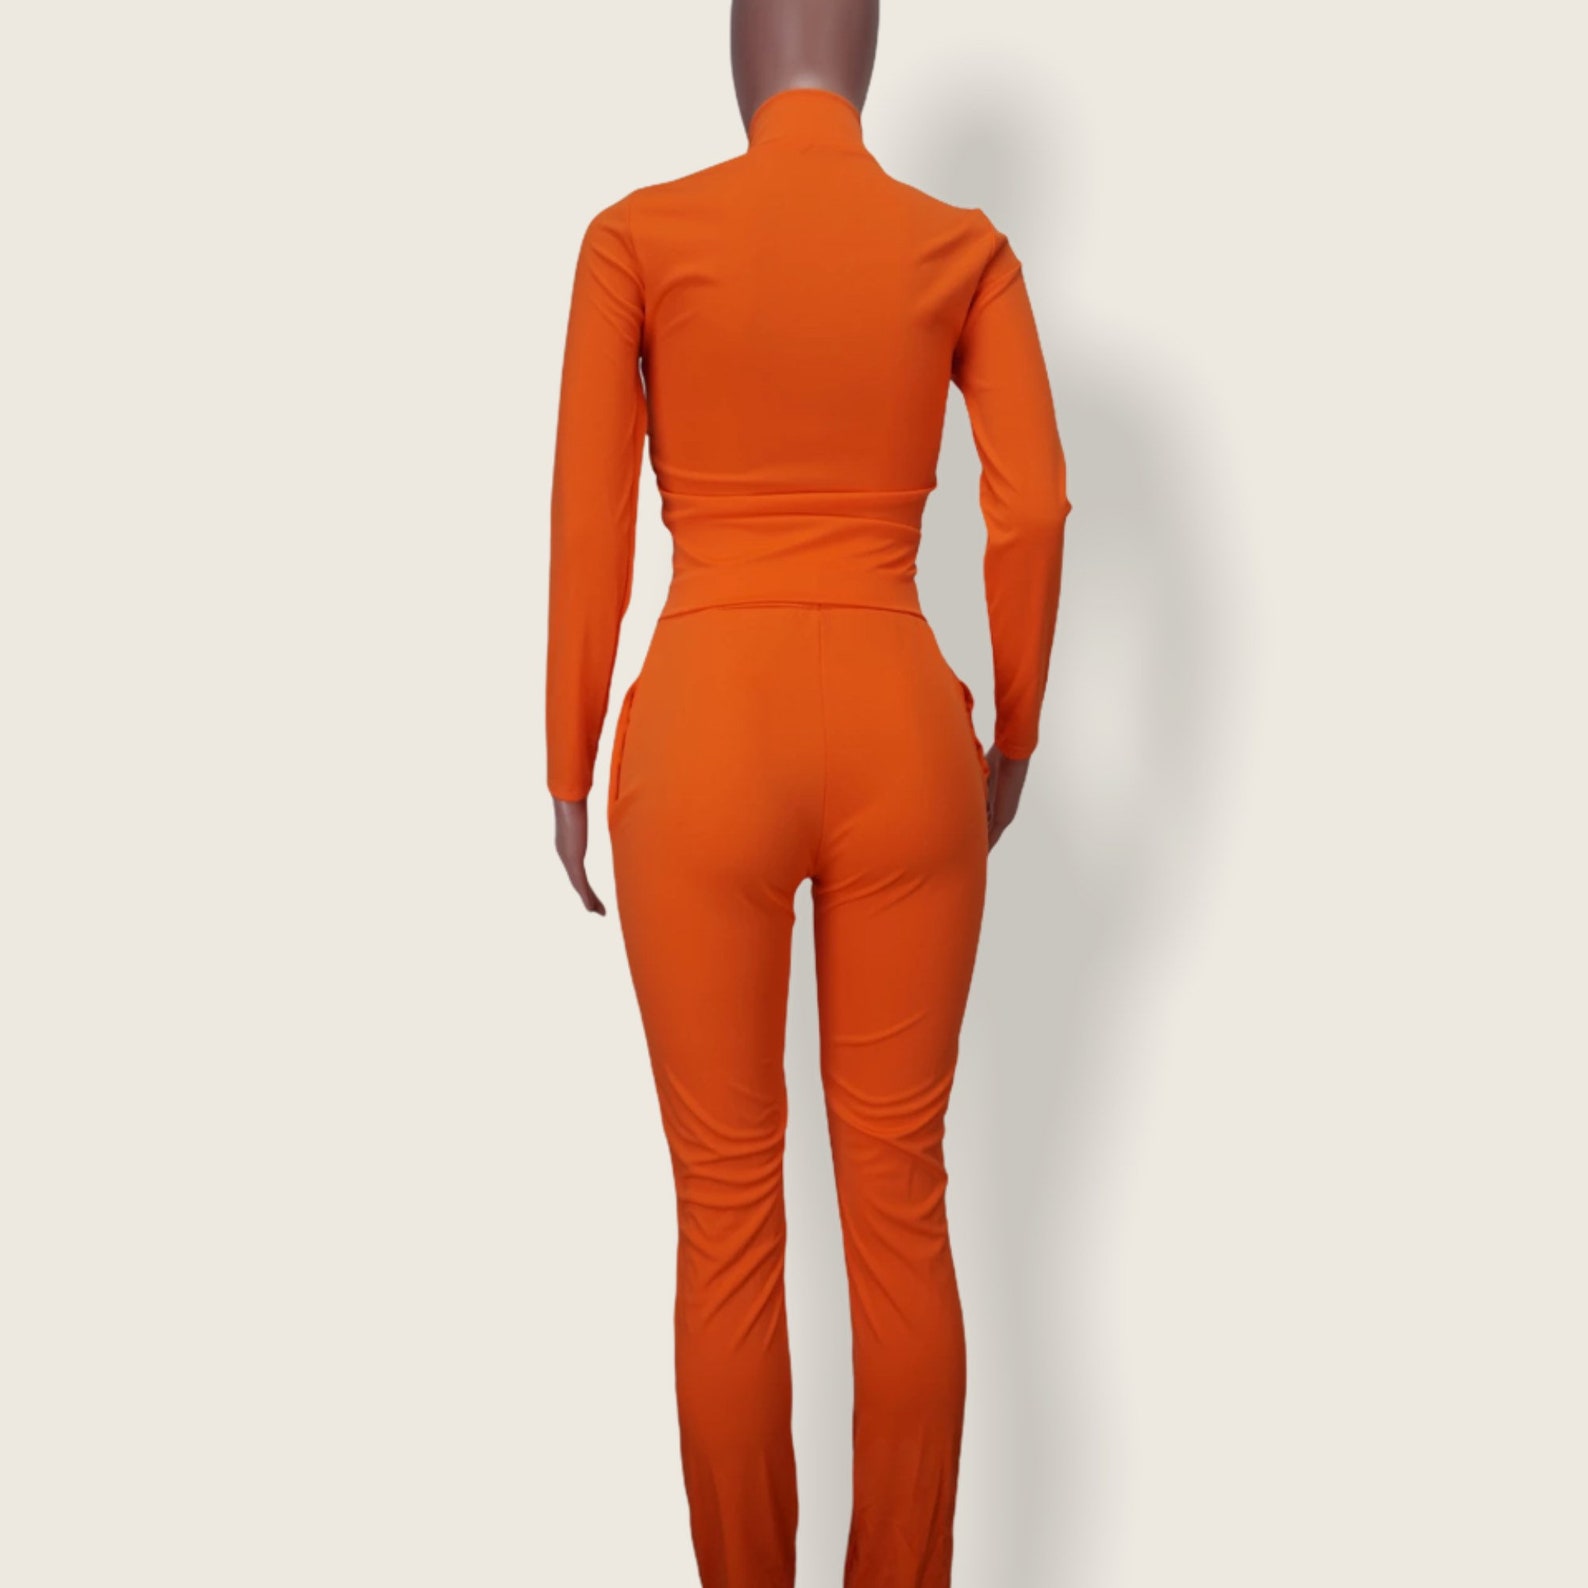 Tangerine dream orange two piece sportswear tracksuit set | Etsy